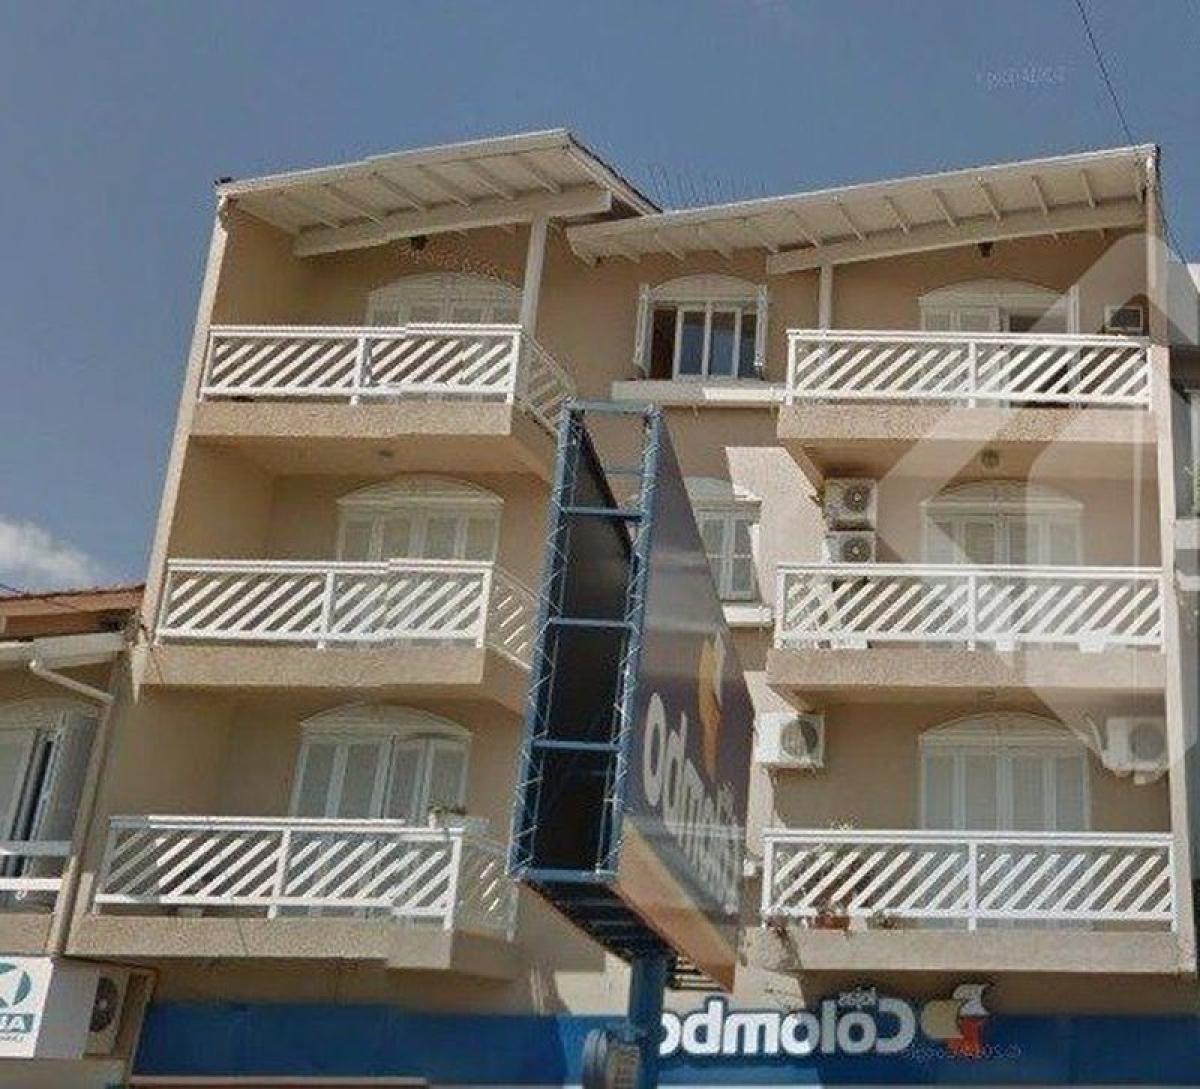 Picture of Apartment For Sale in Novo Hamburgo, Rio Grande do Sul, Brazil